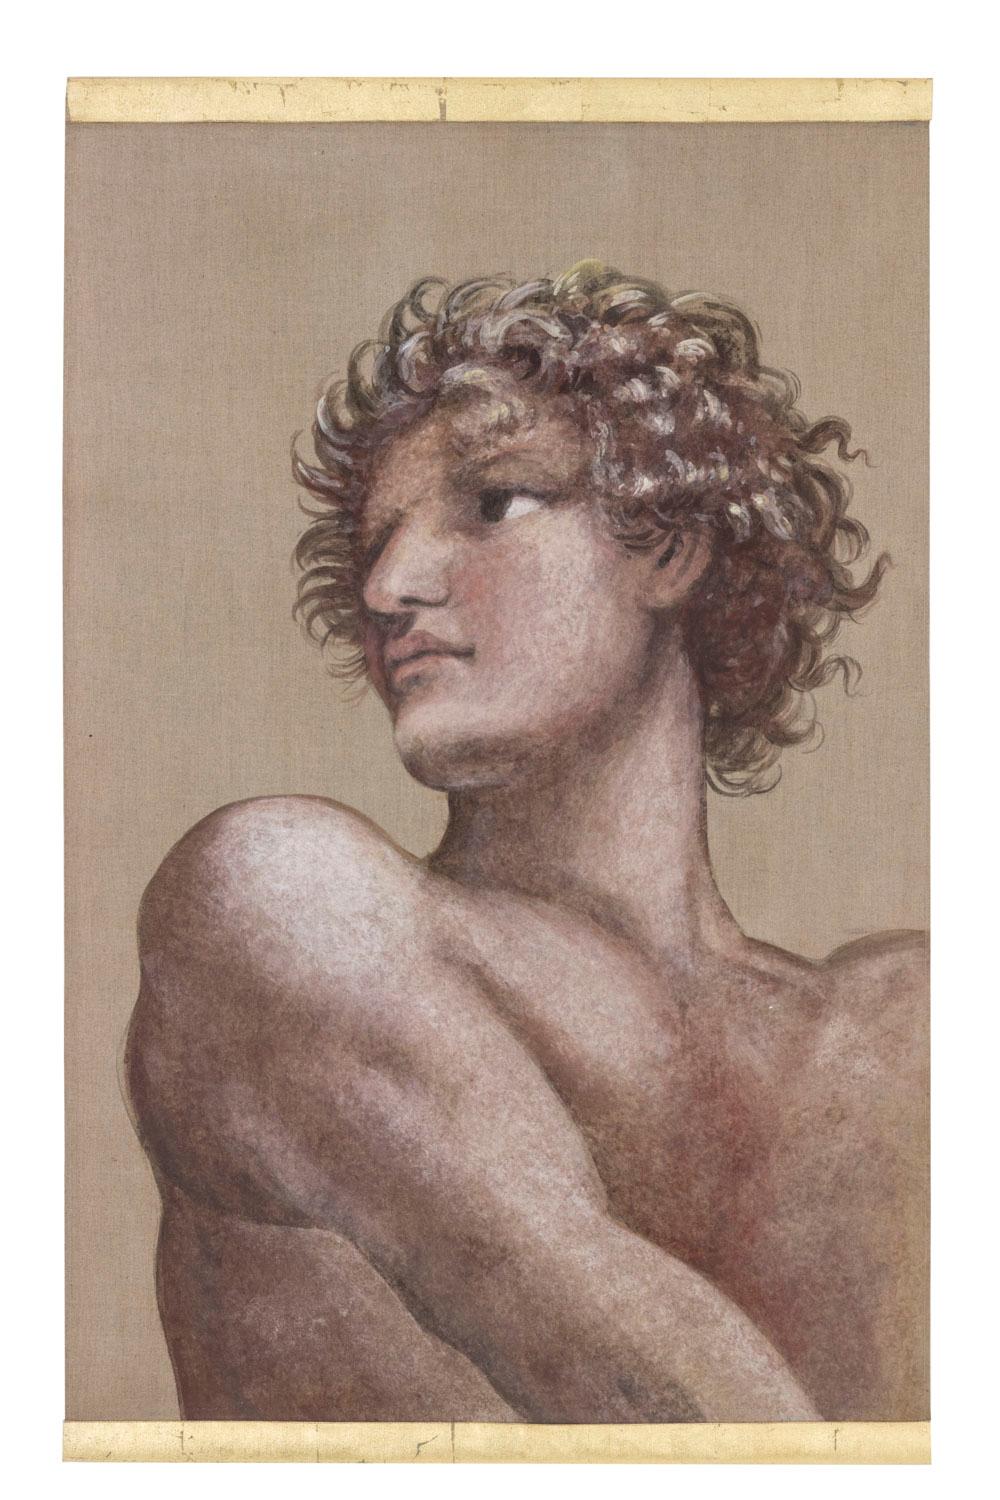 Toile peinte représentant un homme dans le style de Michel-Ange, vue de dessous et de côté. Il est nu avec des muscles rappelant ceux des tableaux de la Renaissance italienne, il a des cheveux bouclés et tourne la tête vers la gauche. Fond